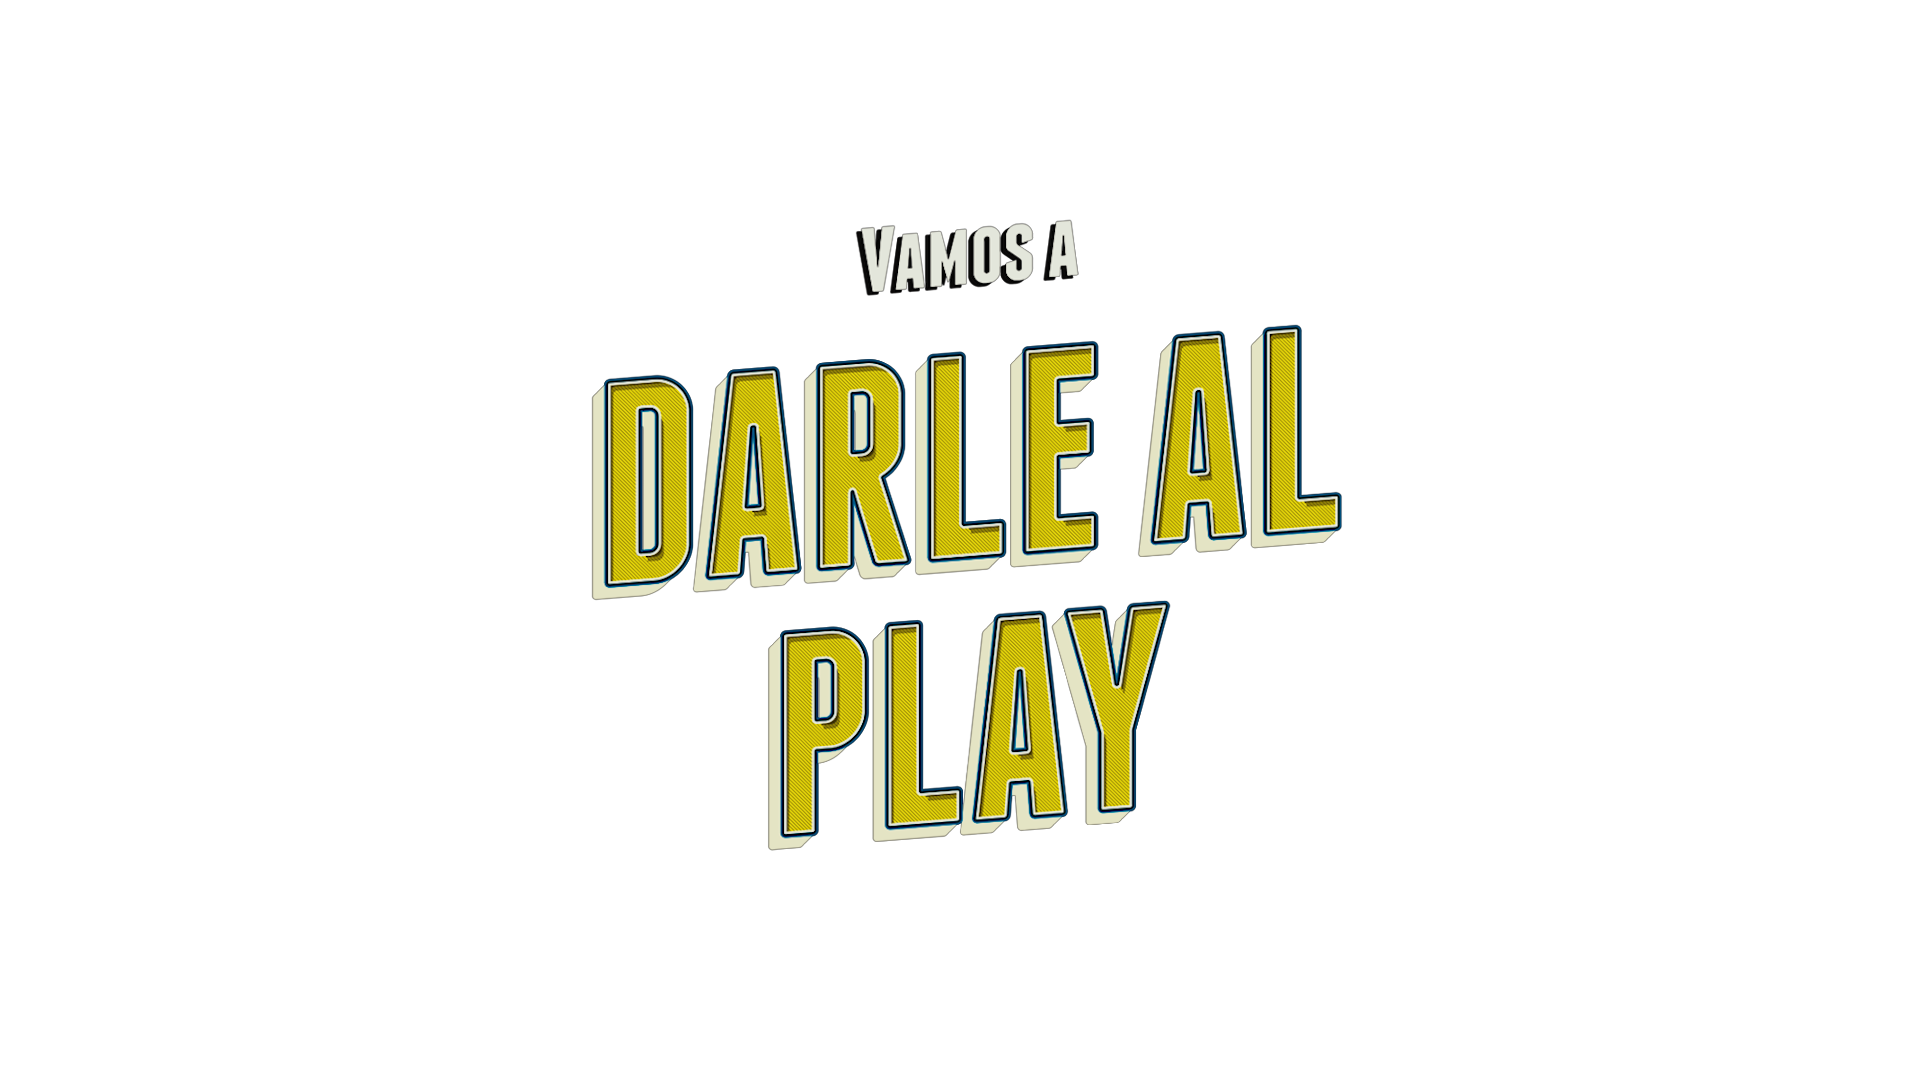 Yamuve "Vamos a darle al play" | Productora Productora audiovisual en Valencia y Alicante Alicante Valencia